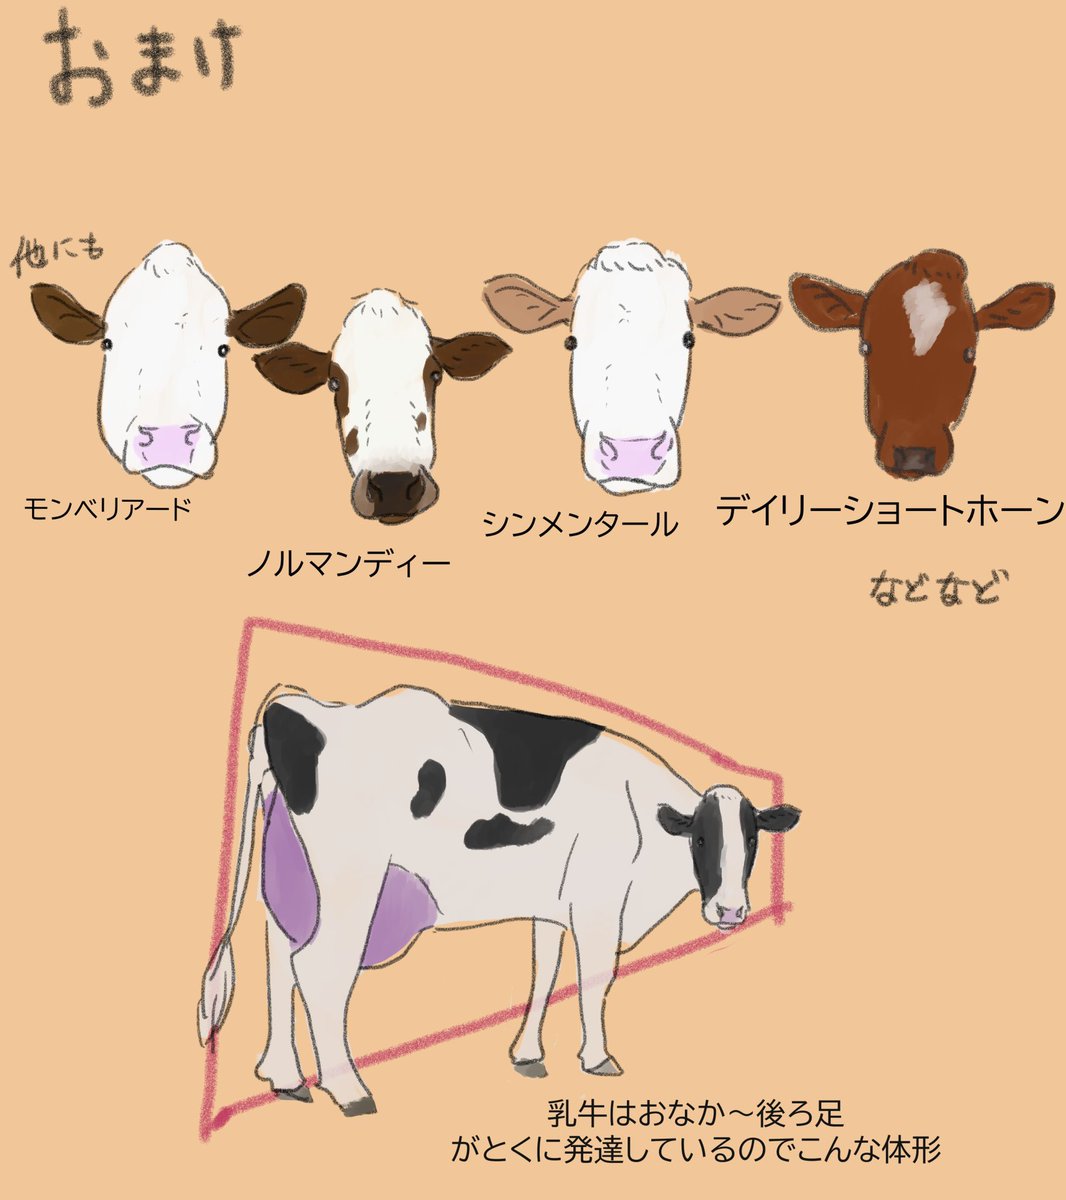 乳牛5大品種の話🐄

年賀状で牛を描くとき
ホルスタインだけじゃなくて他の品種もいっぱいいるよ〜って広めたいな。
#牛 #乳牛 #牛イラスト

来週は「和牛編』の予定です🐂 